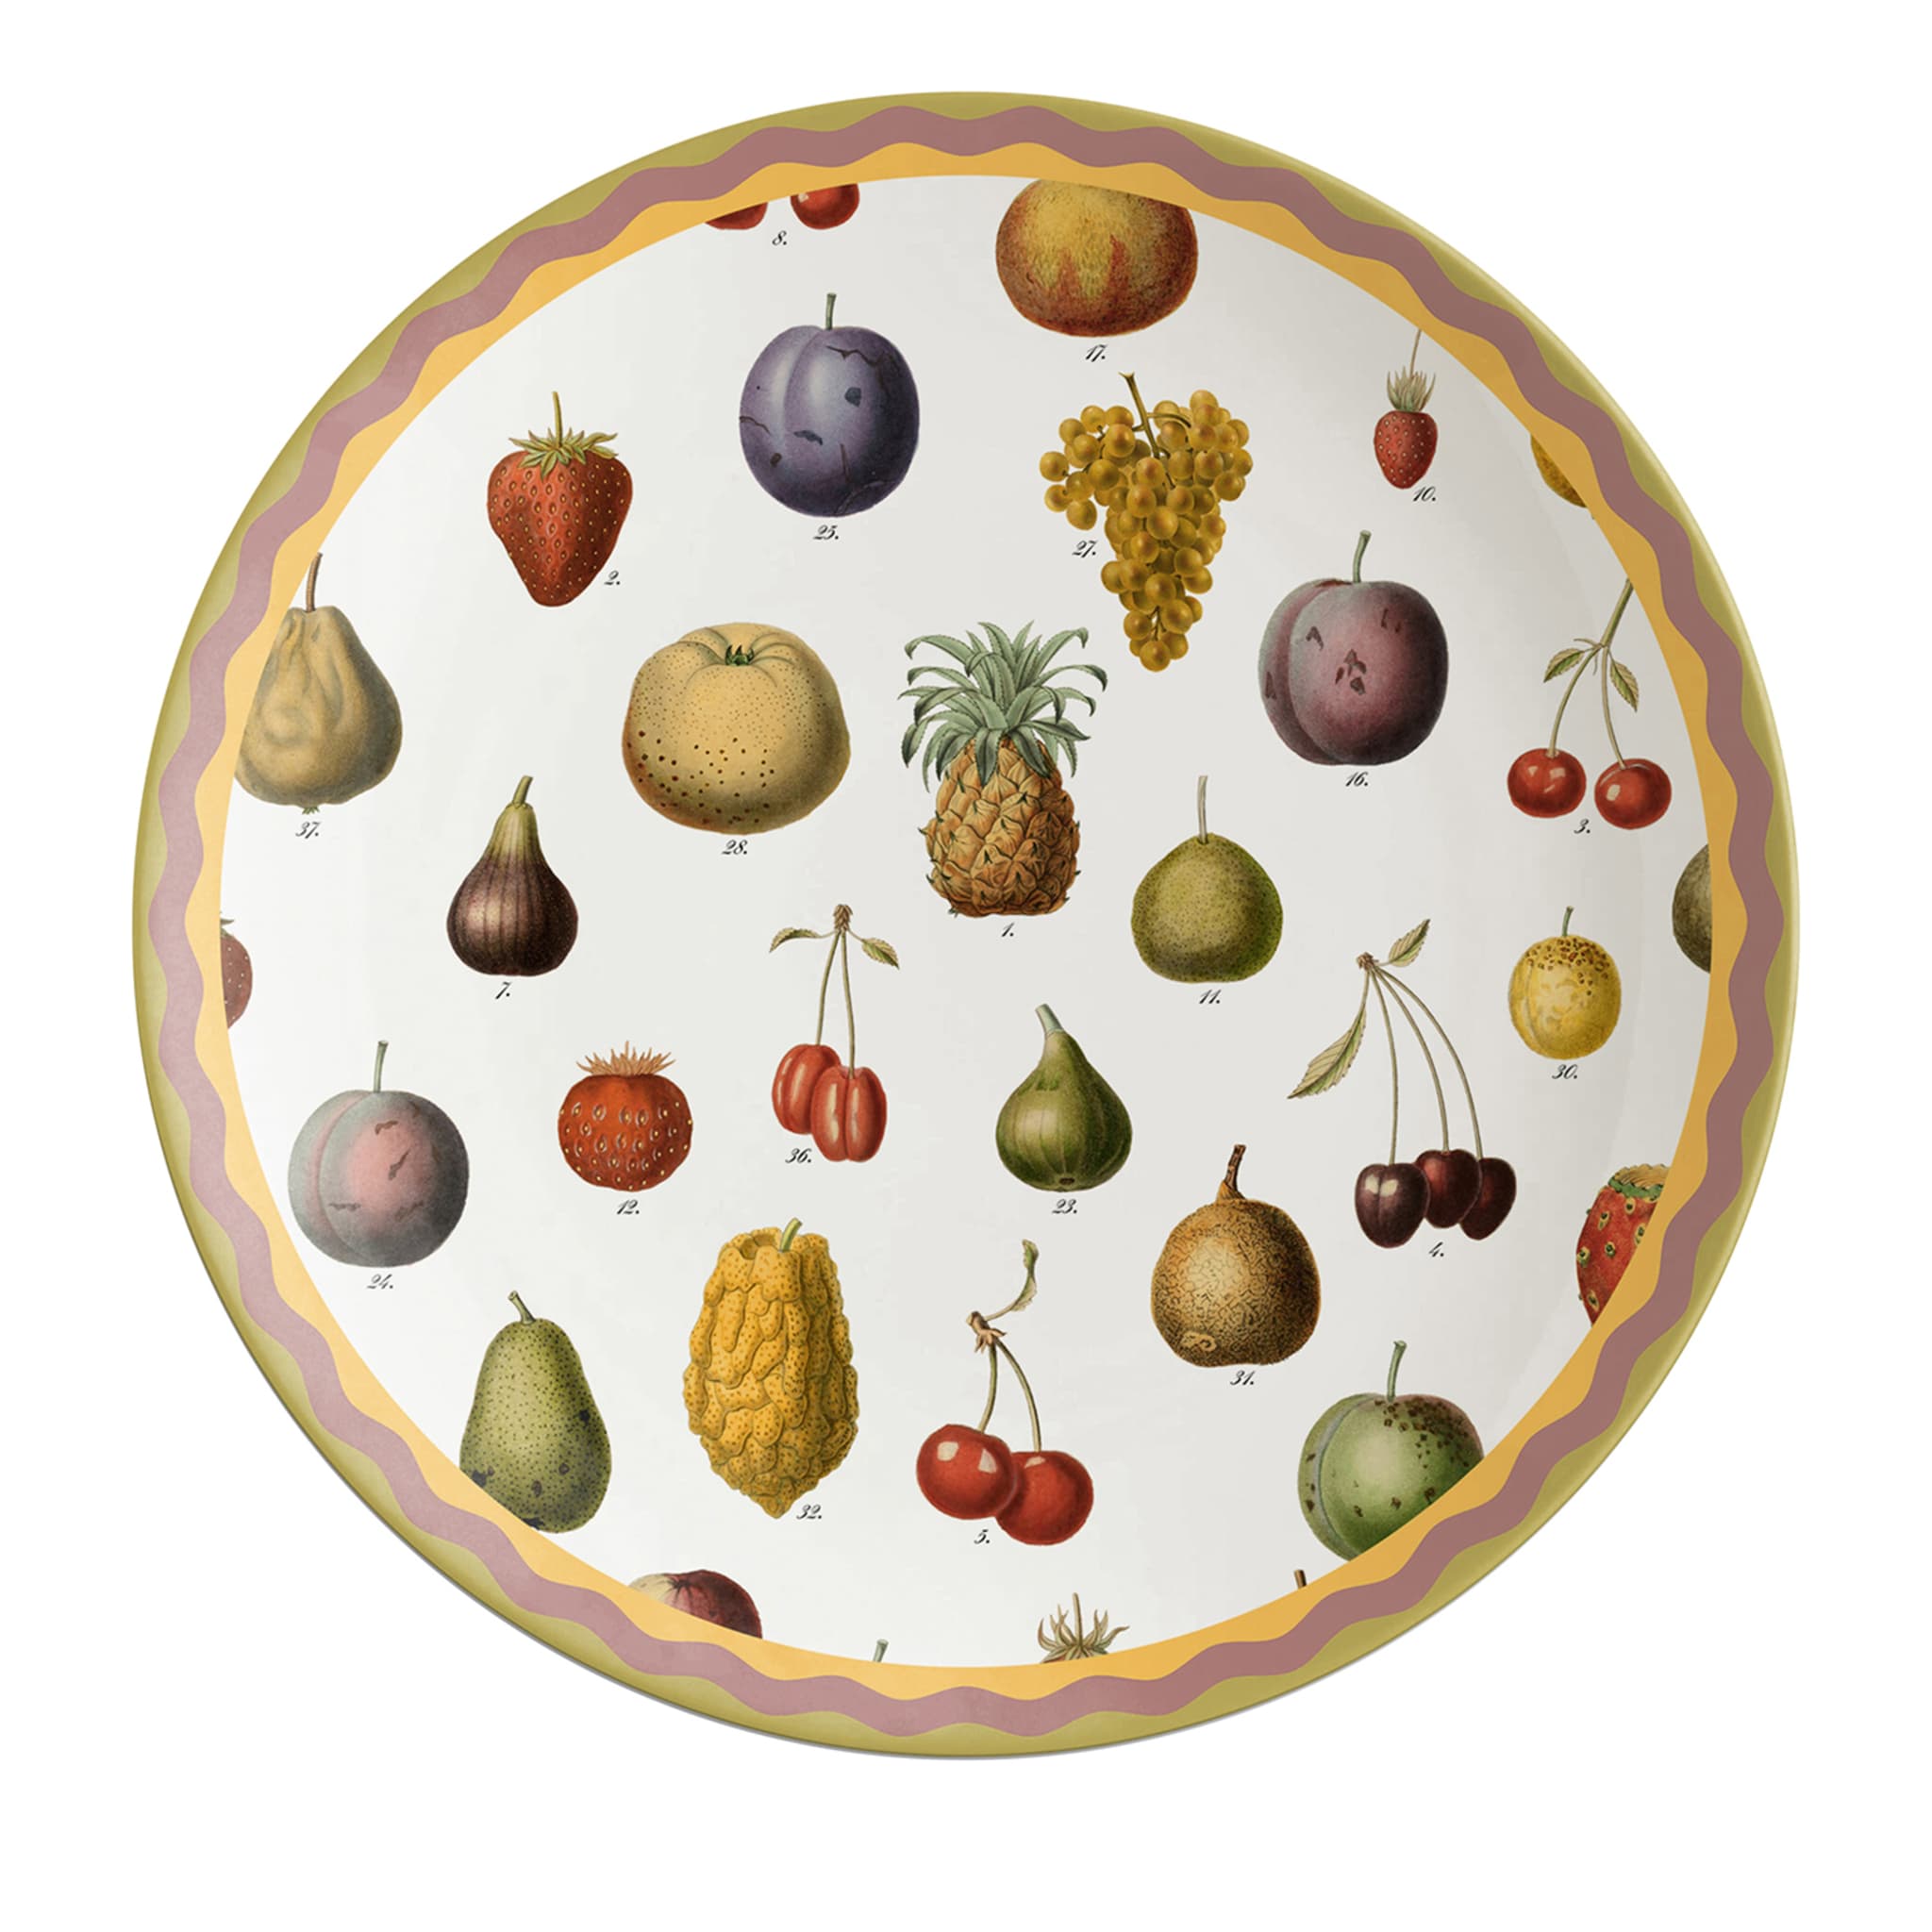 Plato de Frutas Cabinet de Curiosités - Vista principal